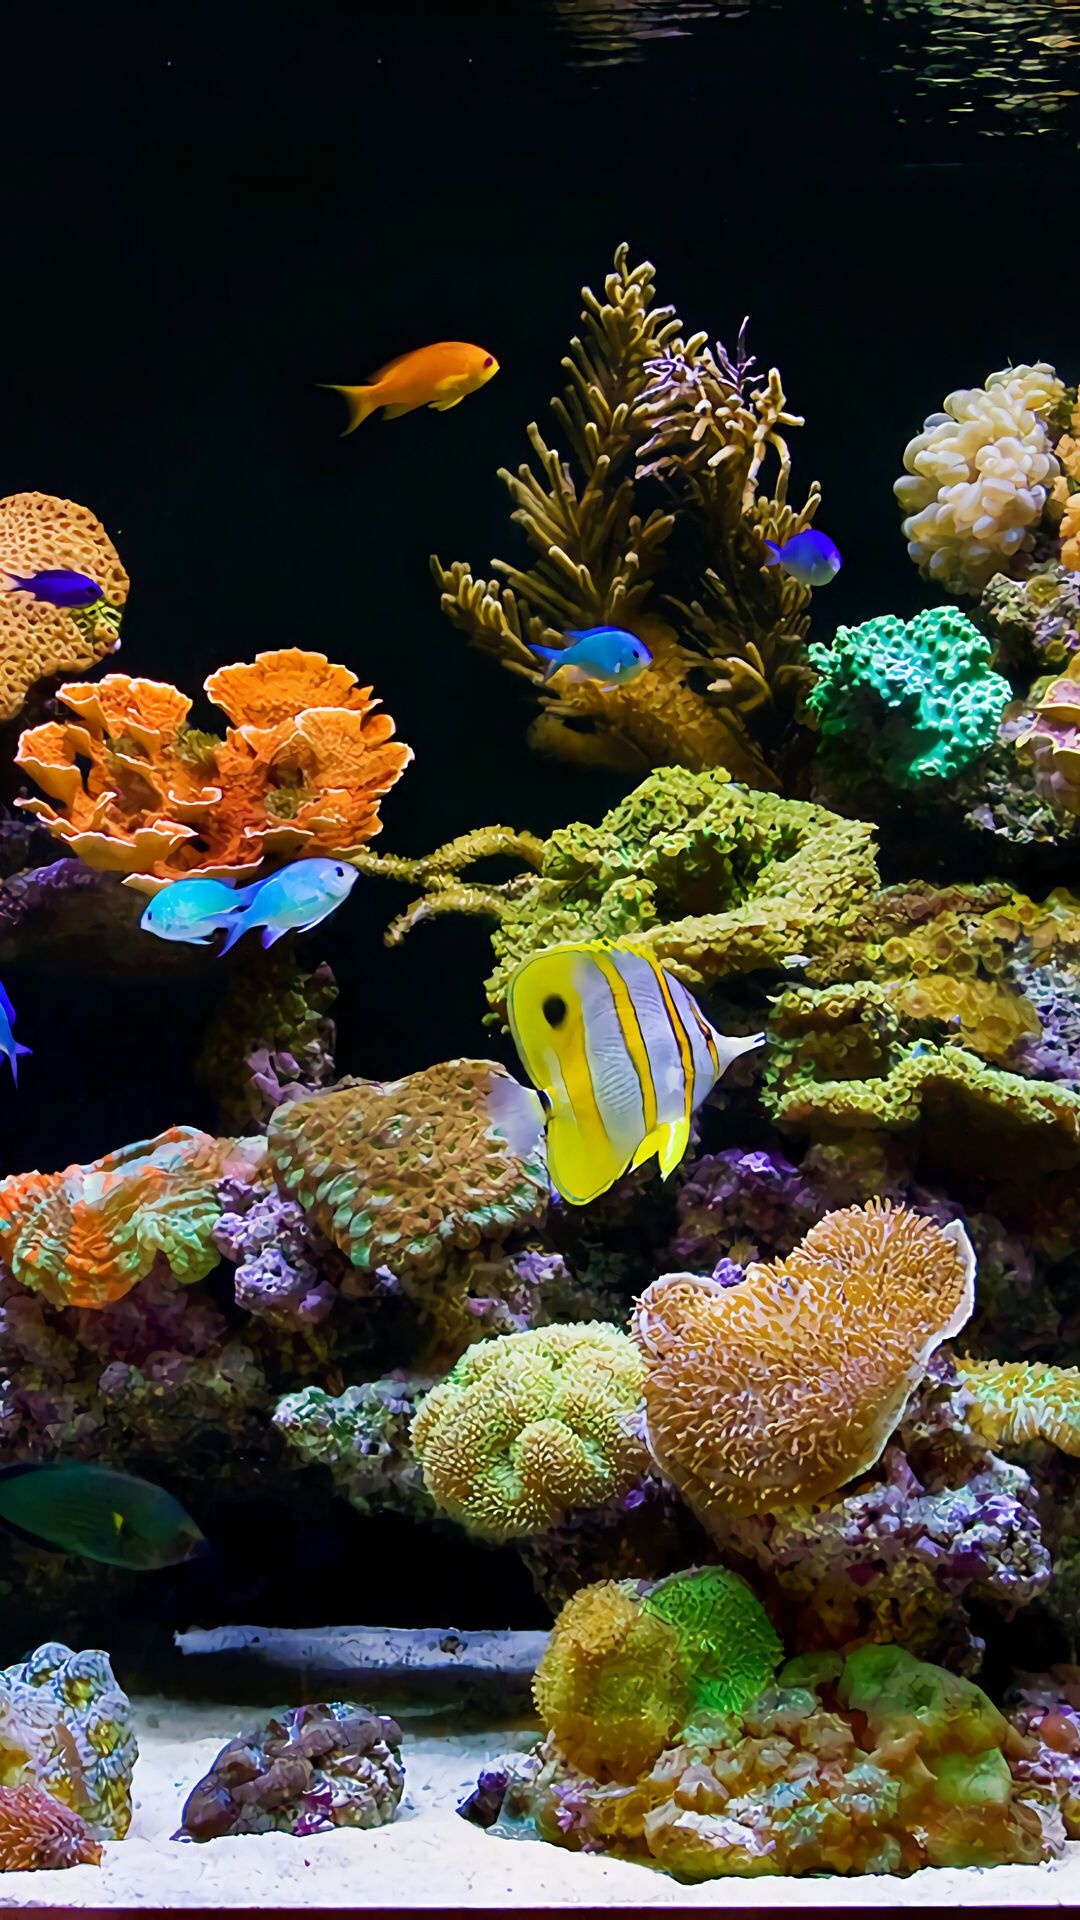 Aquarium, Virtual pin page, Aquatic inspiration, Share aquarium images, Captivating underwater scenes, 1080x1920 Full HD Handy